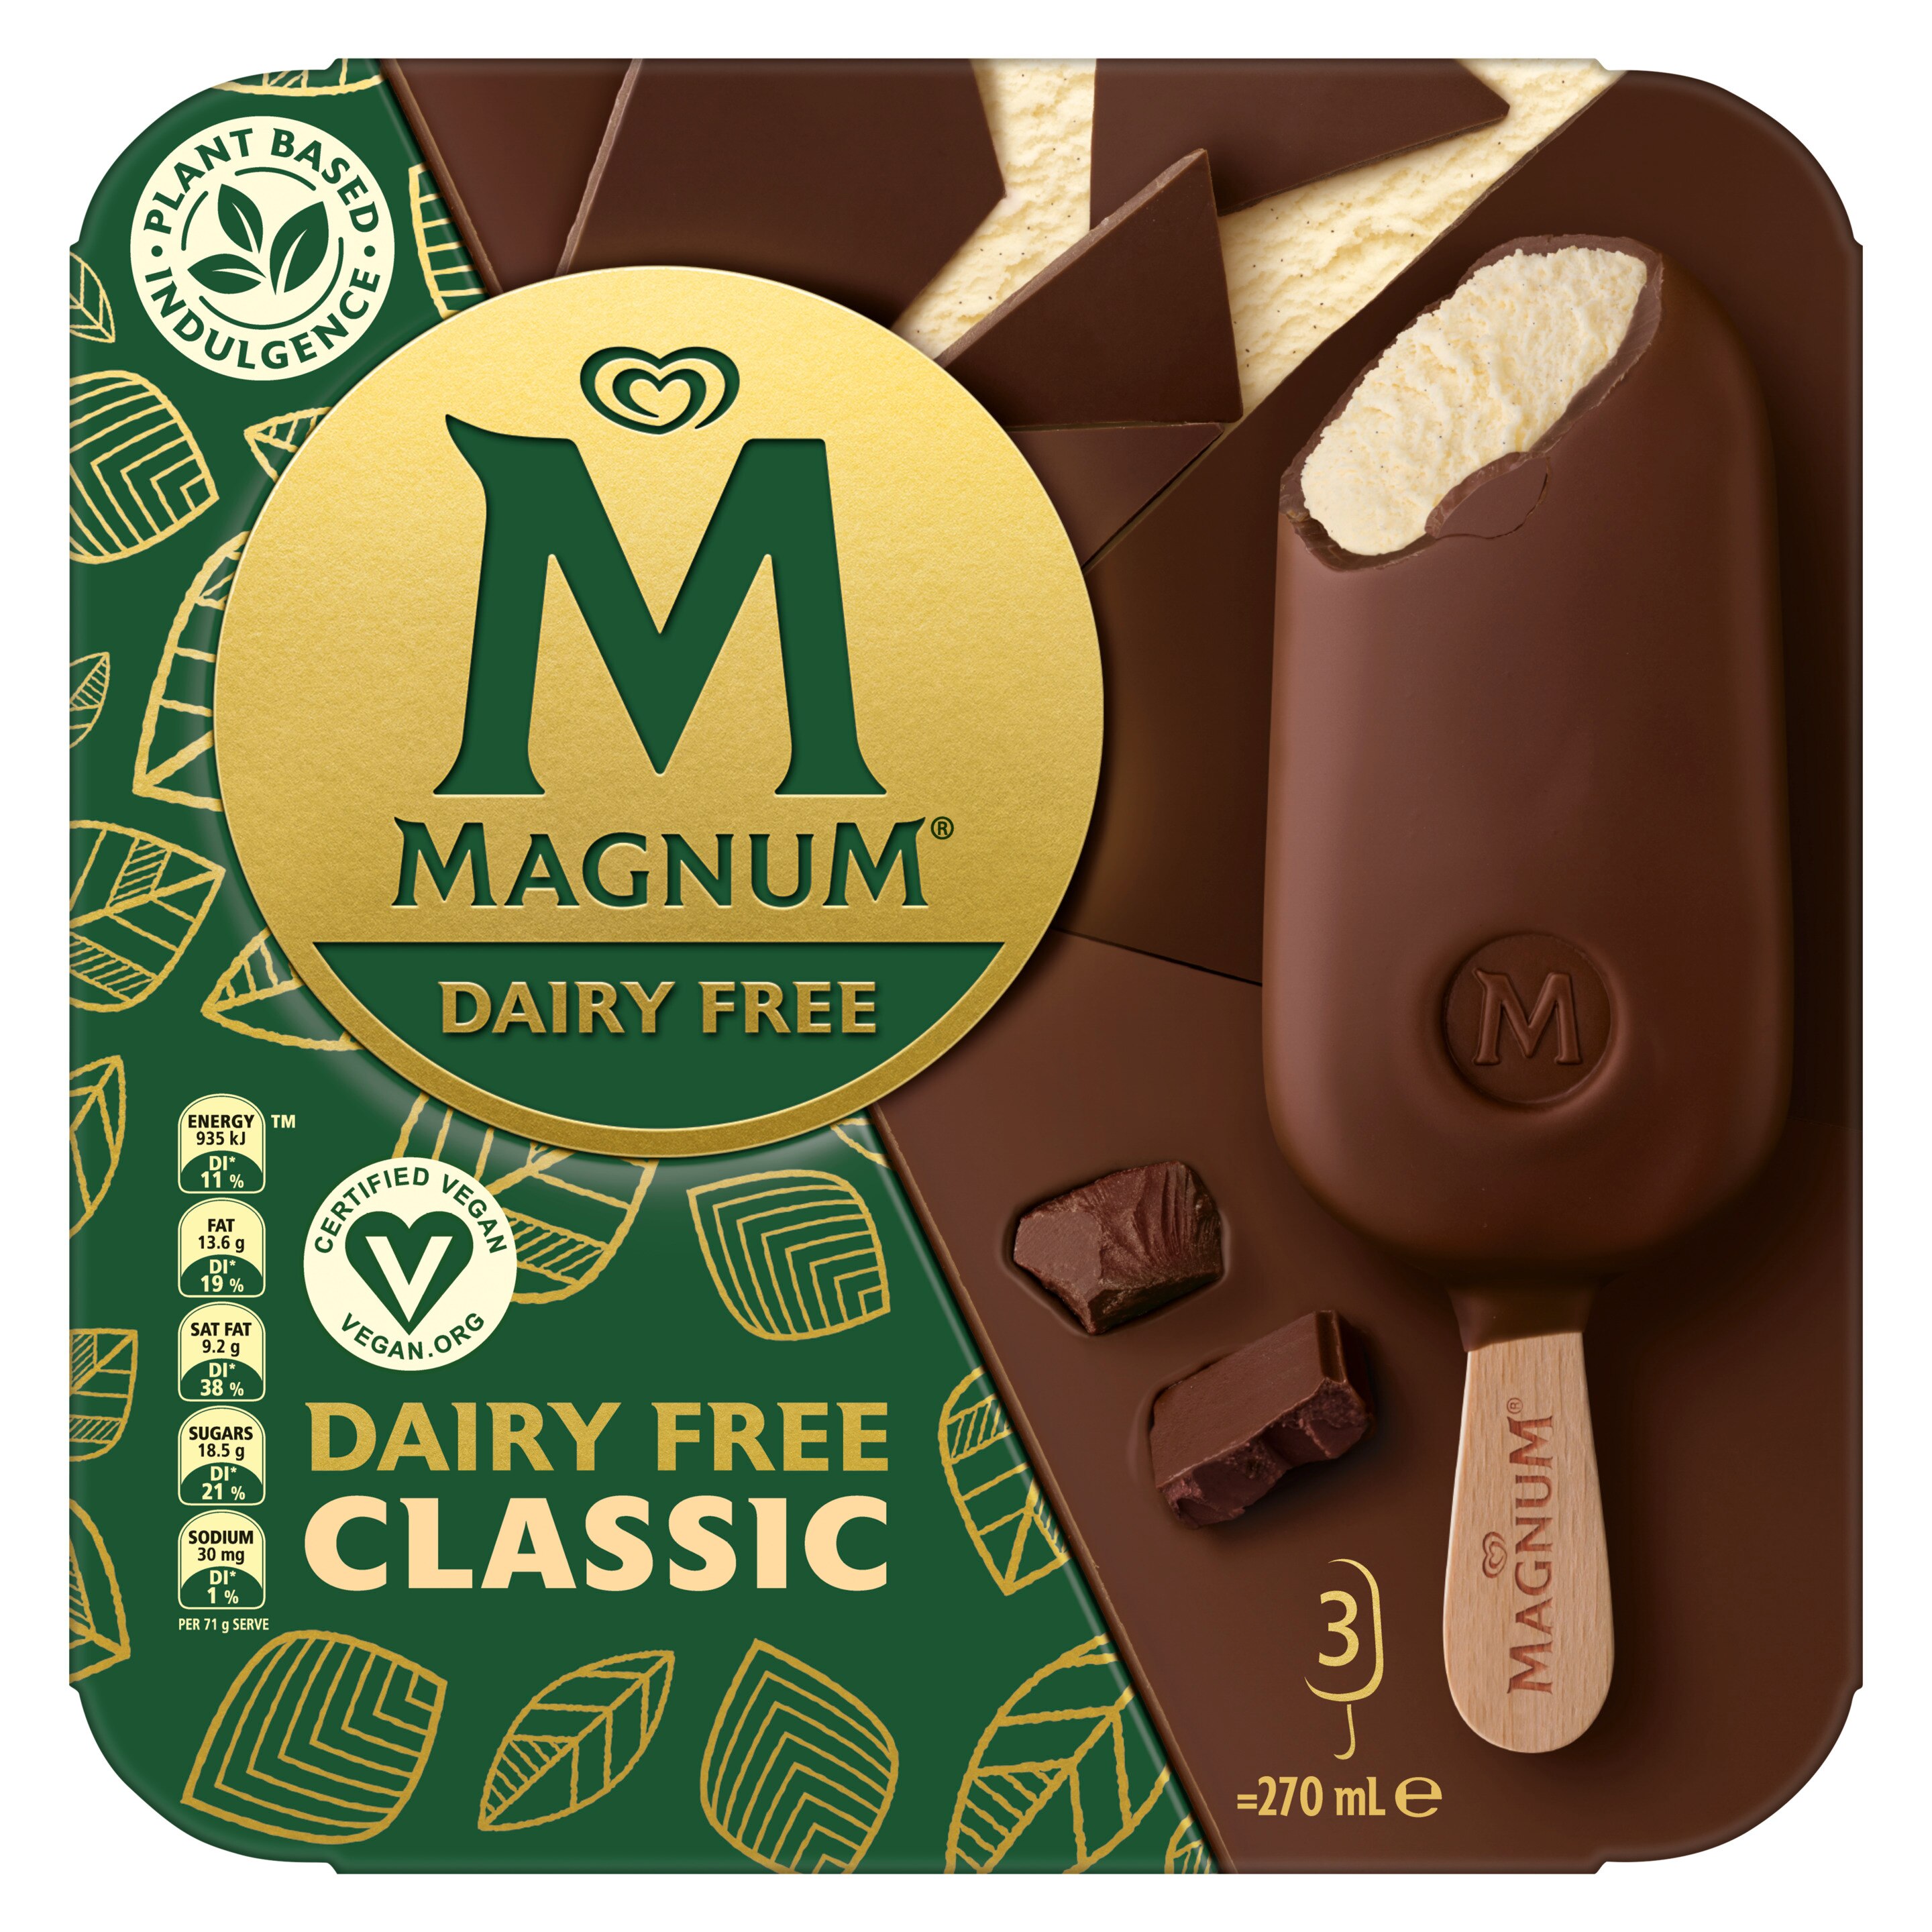 Magnum Dairy Free Classic